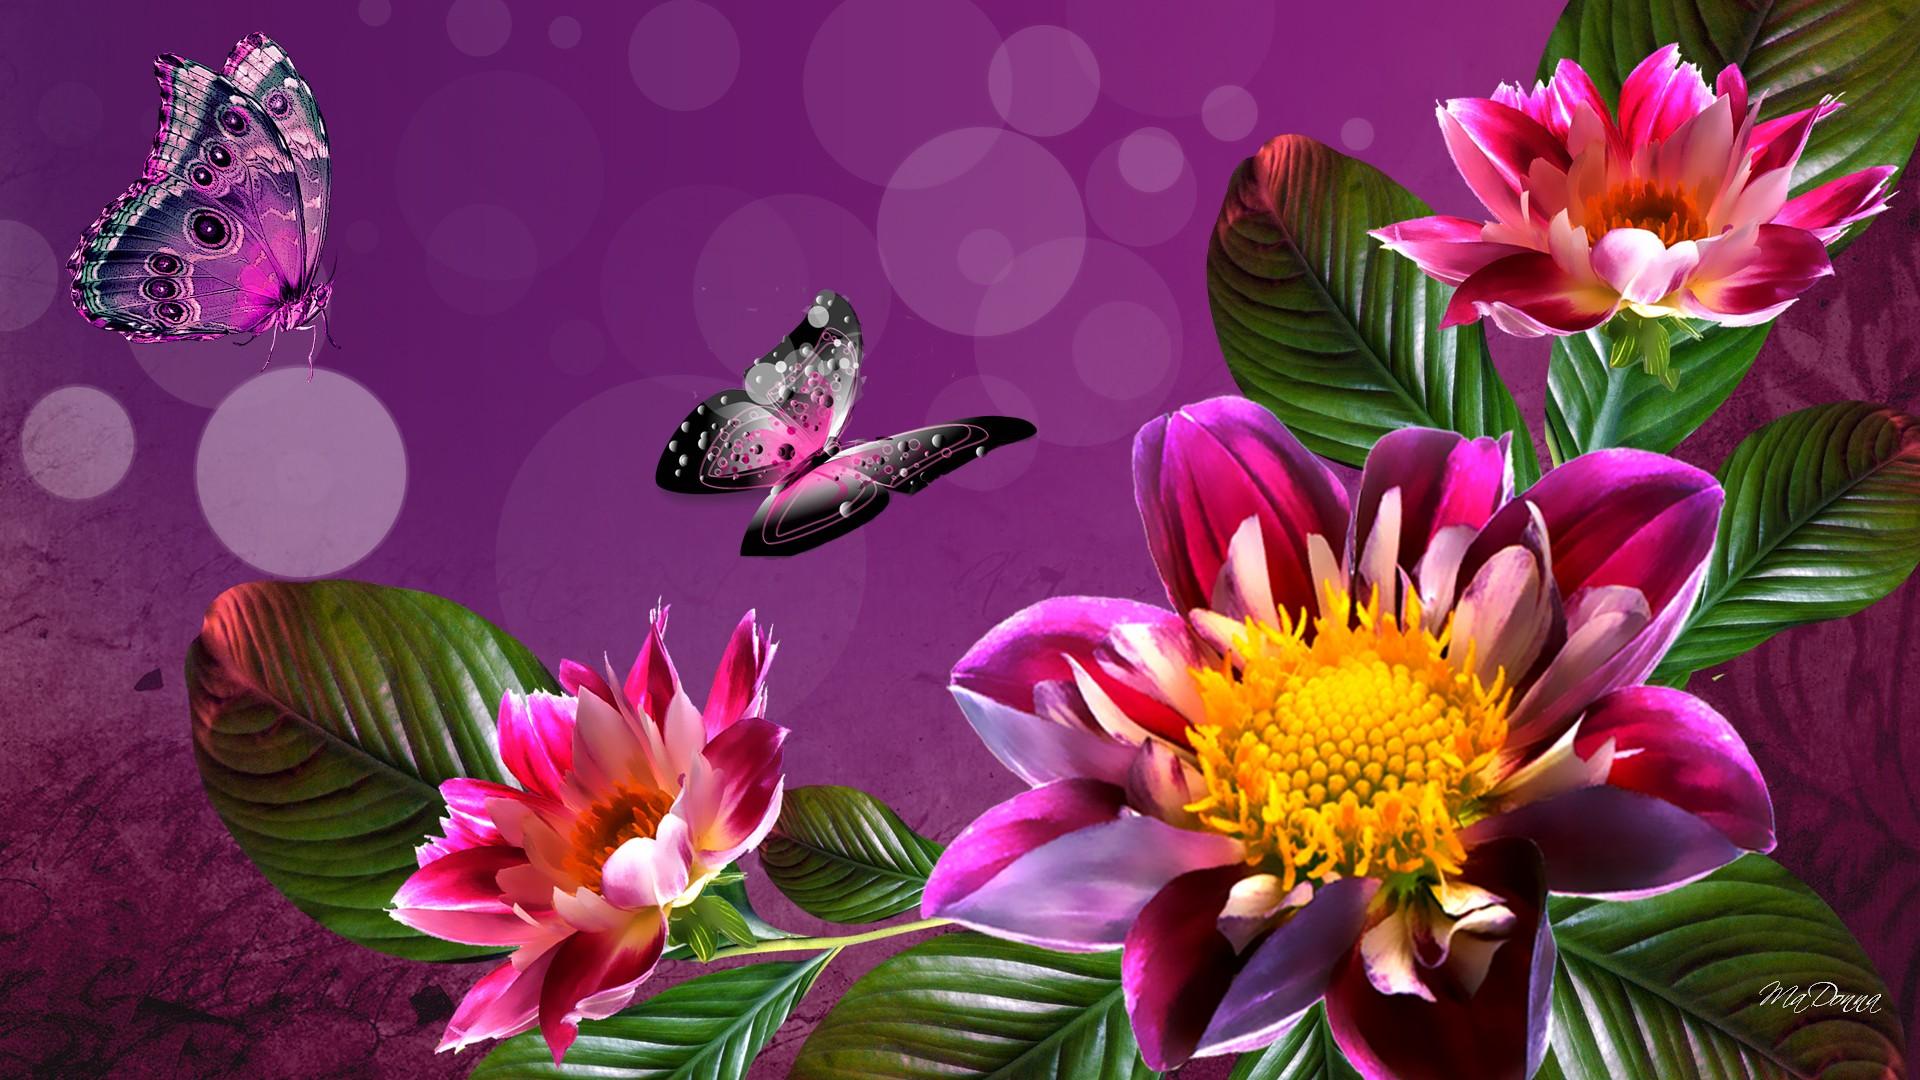 Free flowers wallpaper for desktop Gallery